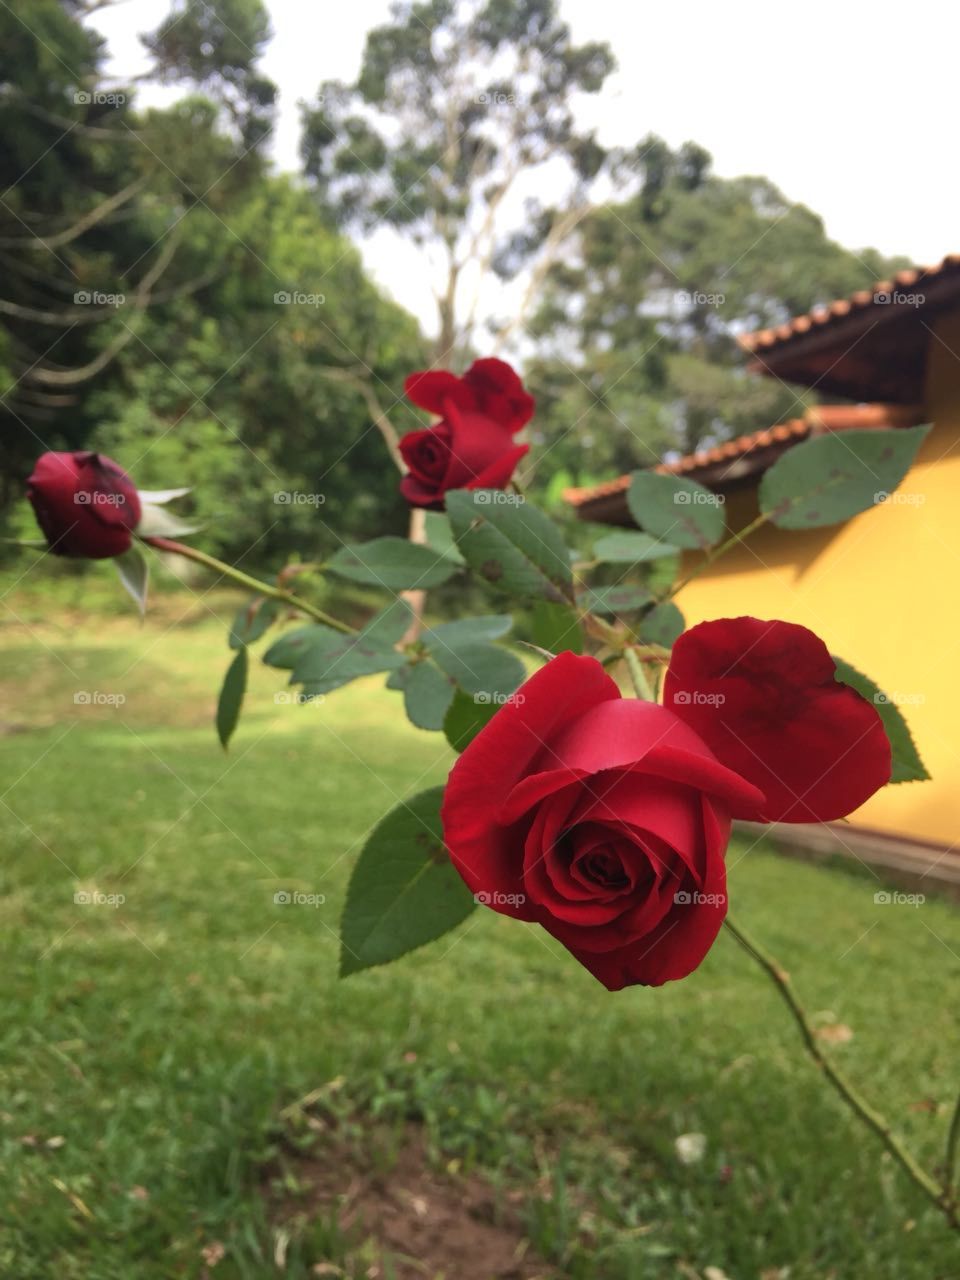 Roseira no quintal da roça. Red rose. Rosa vermelha.